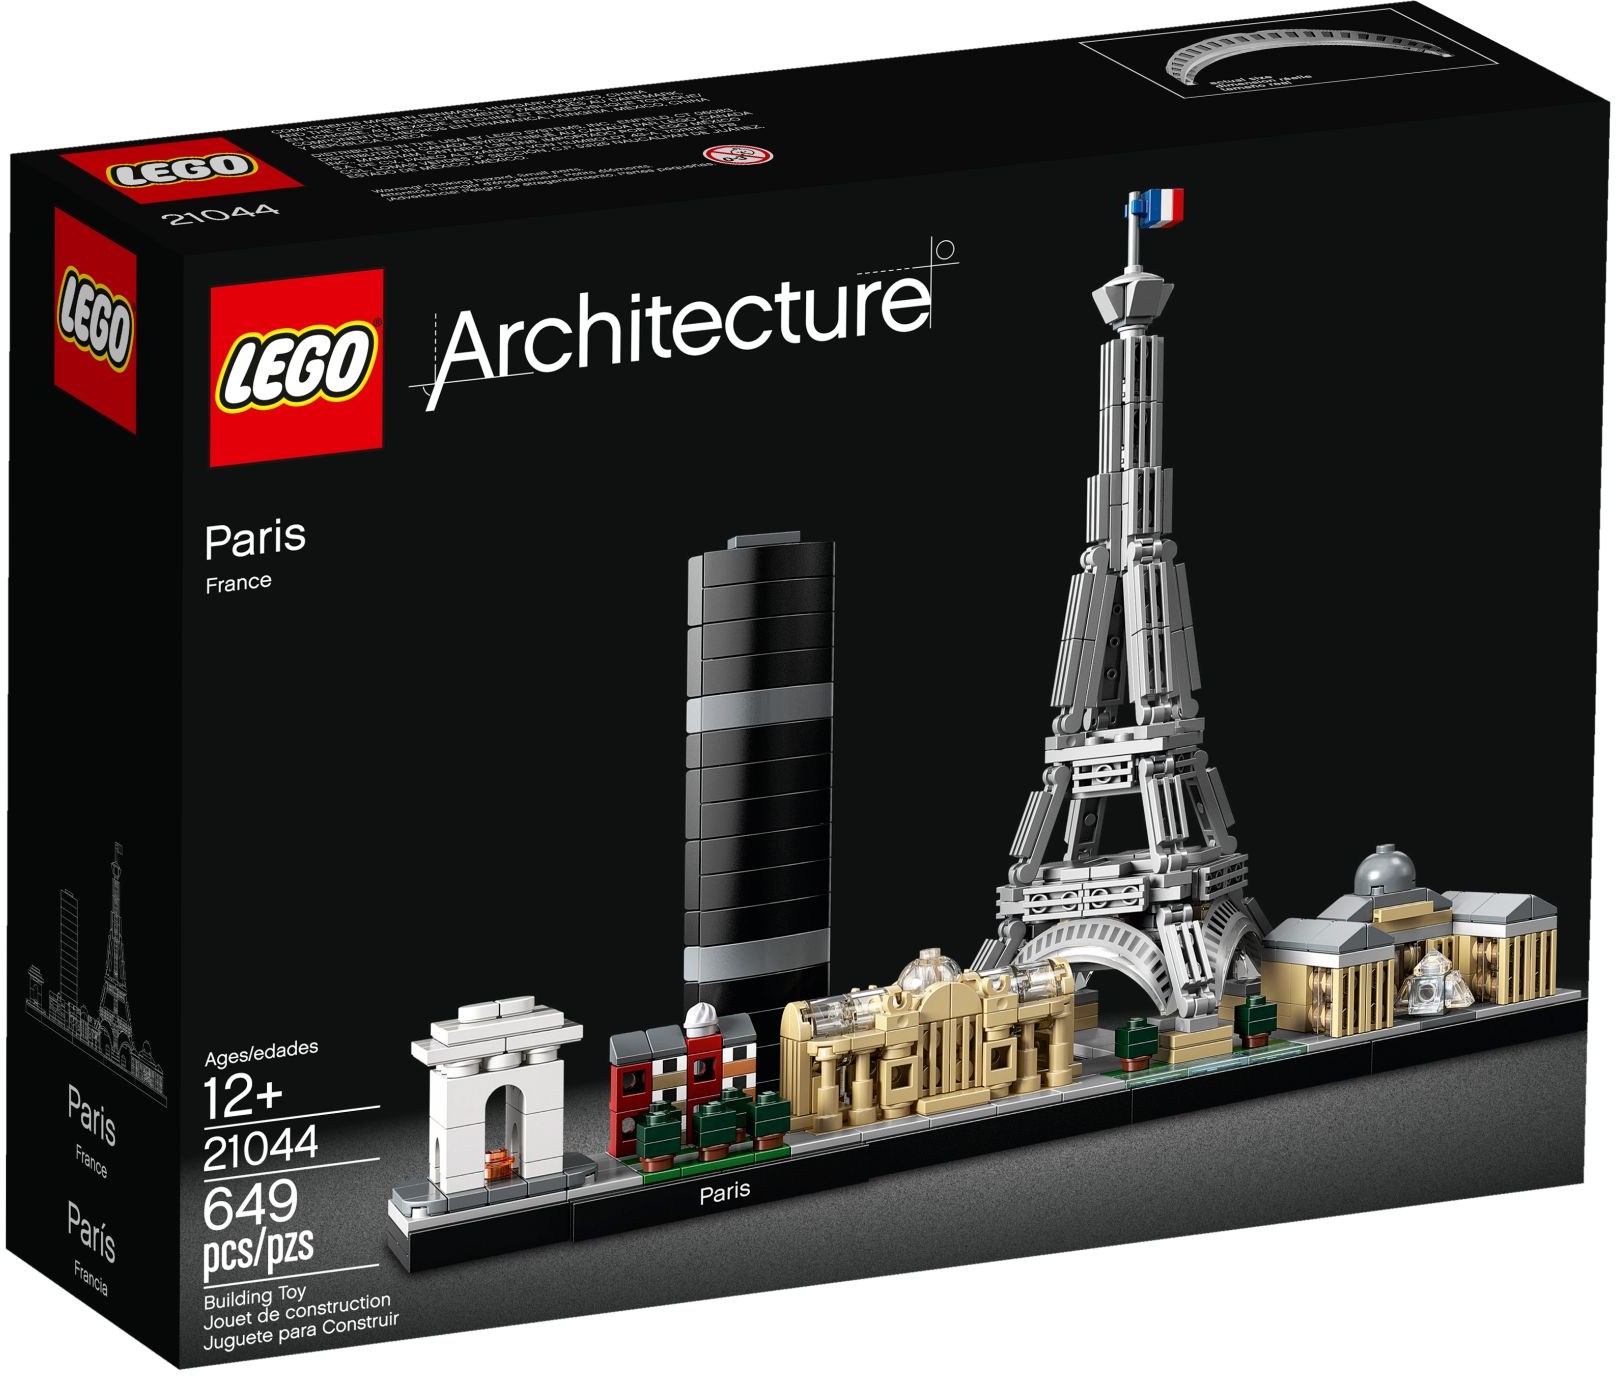 LEGO® Architecture 21044 - Paris - Box front